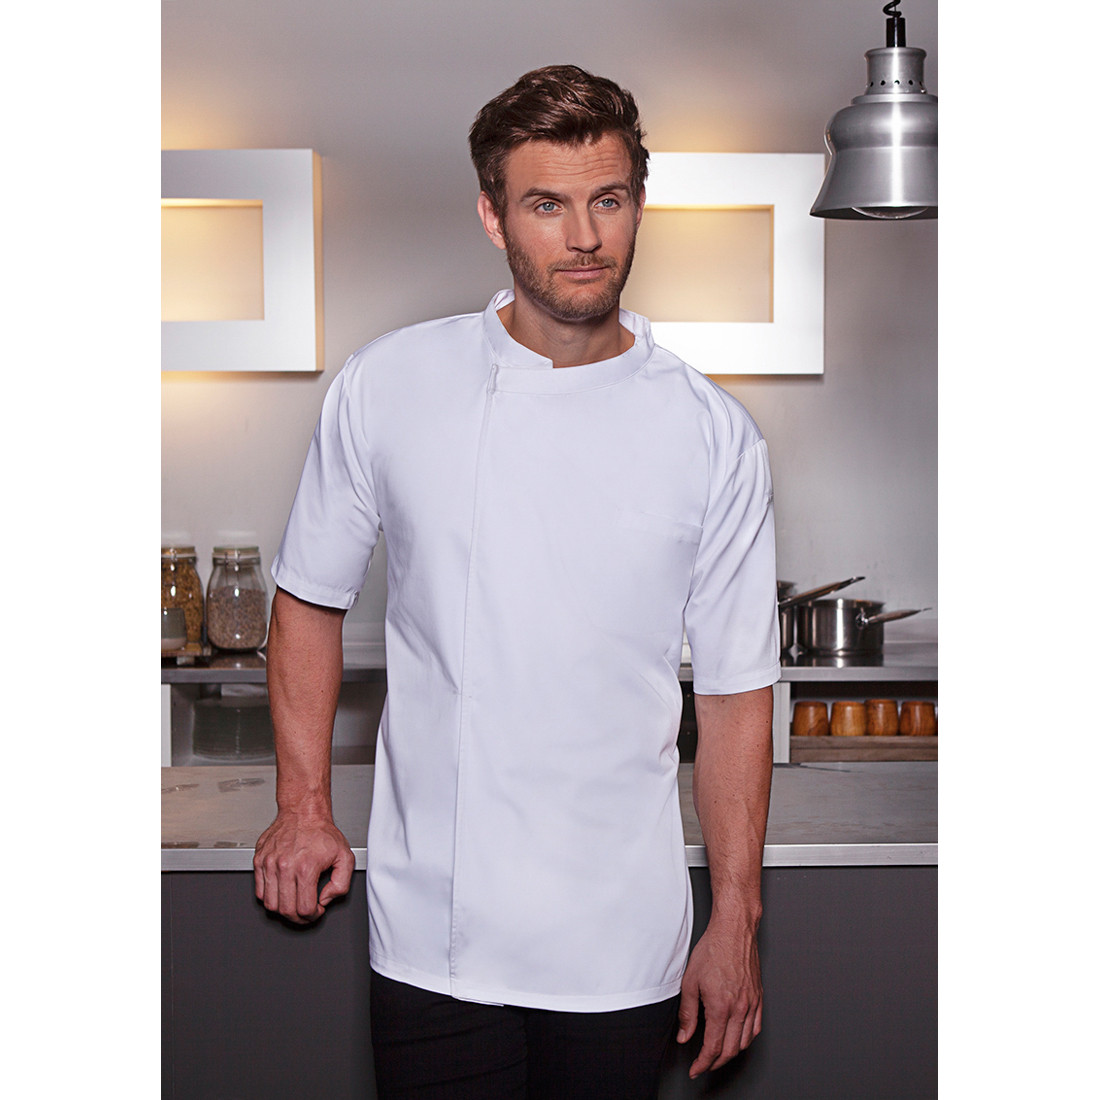 Camisa Basic para cocinero, manga corta - Ropa de protección